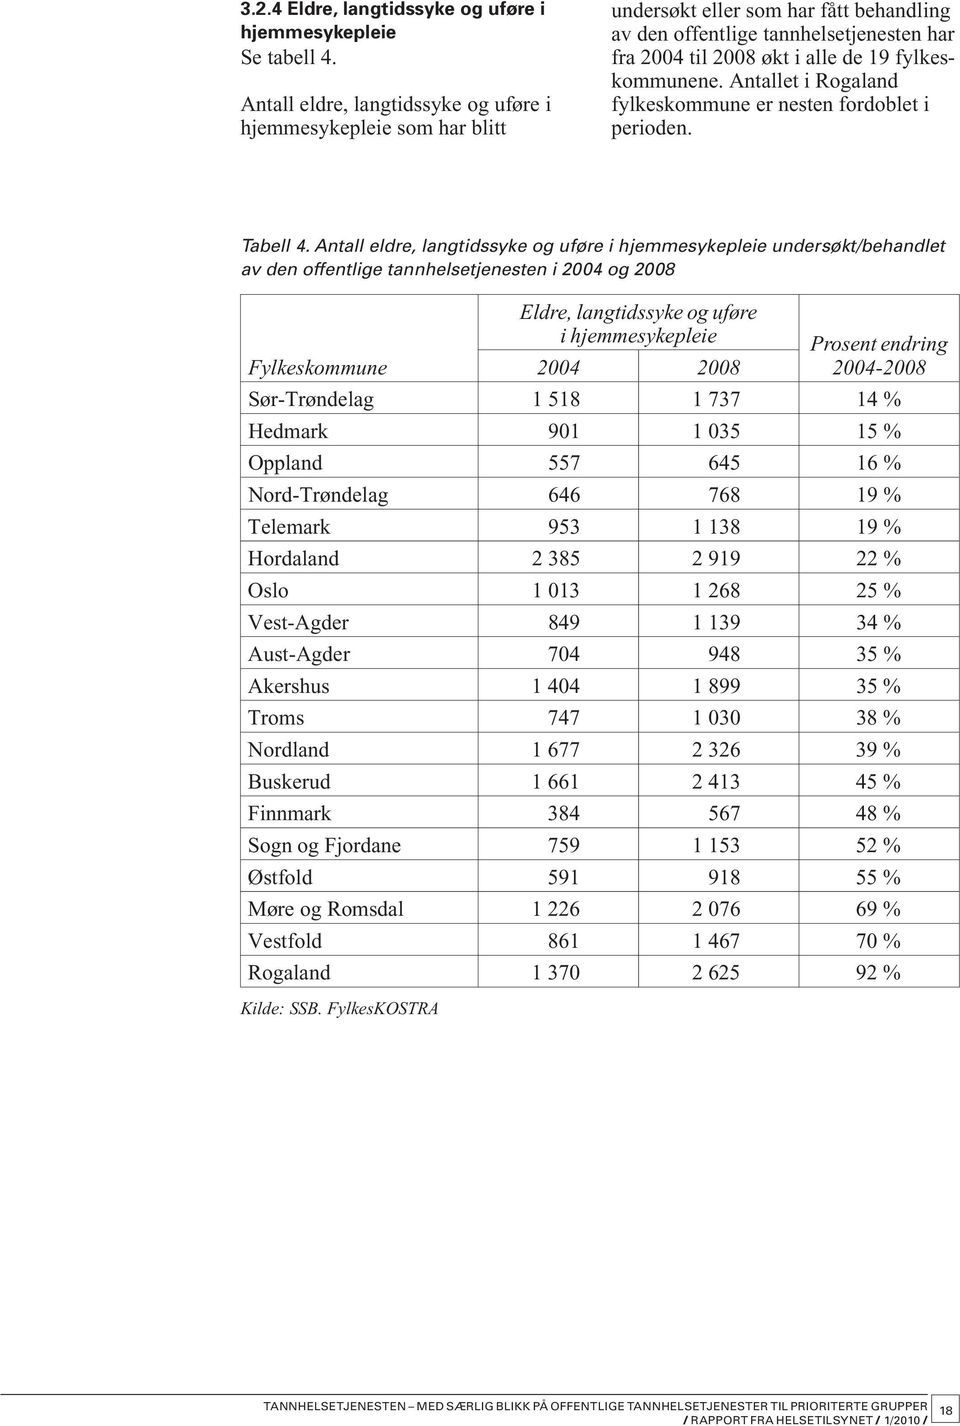 Antallet i Rogaland fylkeskommune er nesten fordoblet i perioden. Tabell 4.